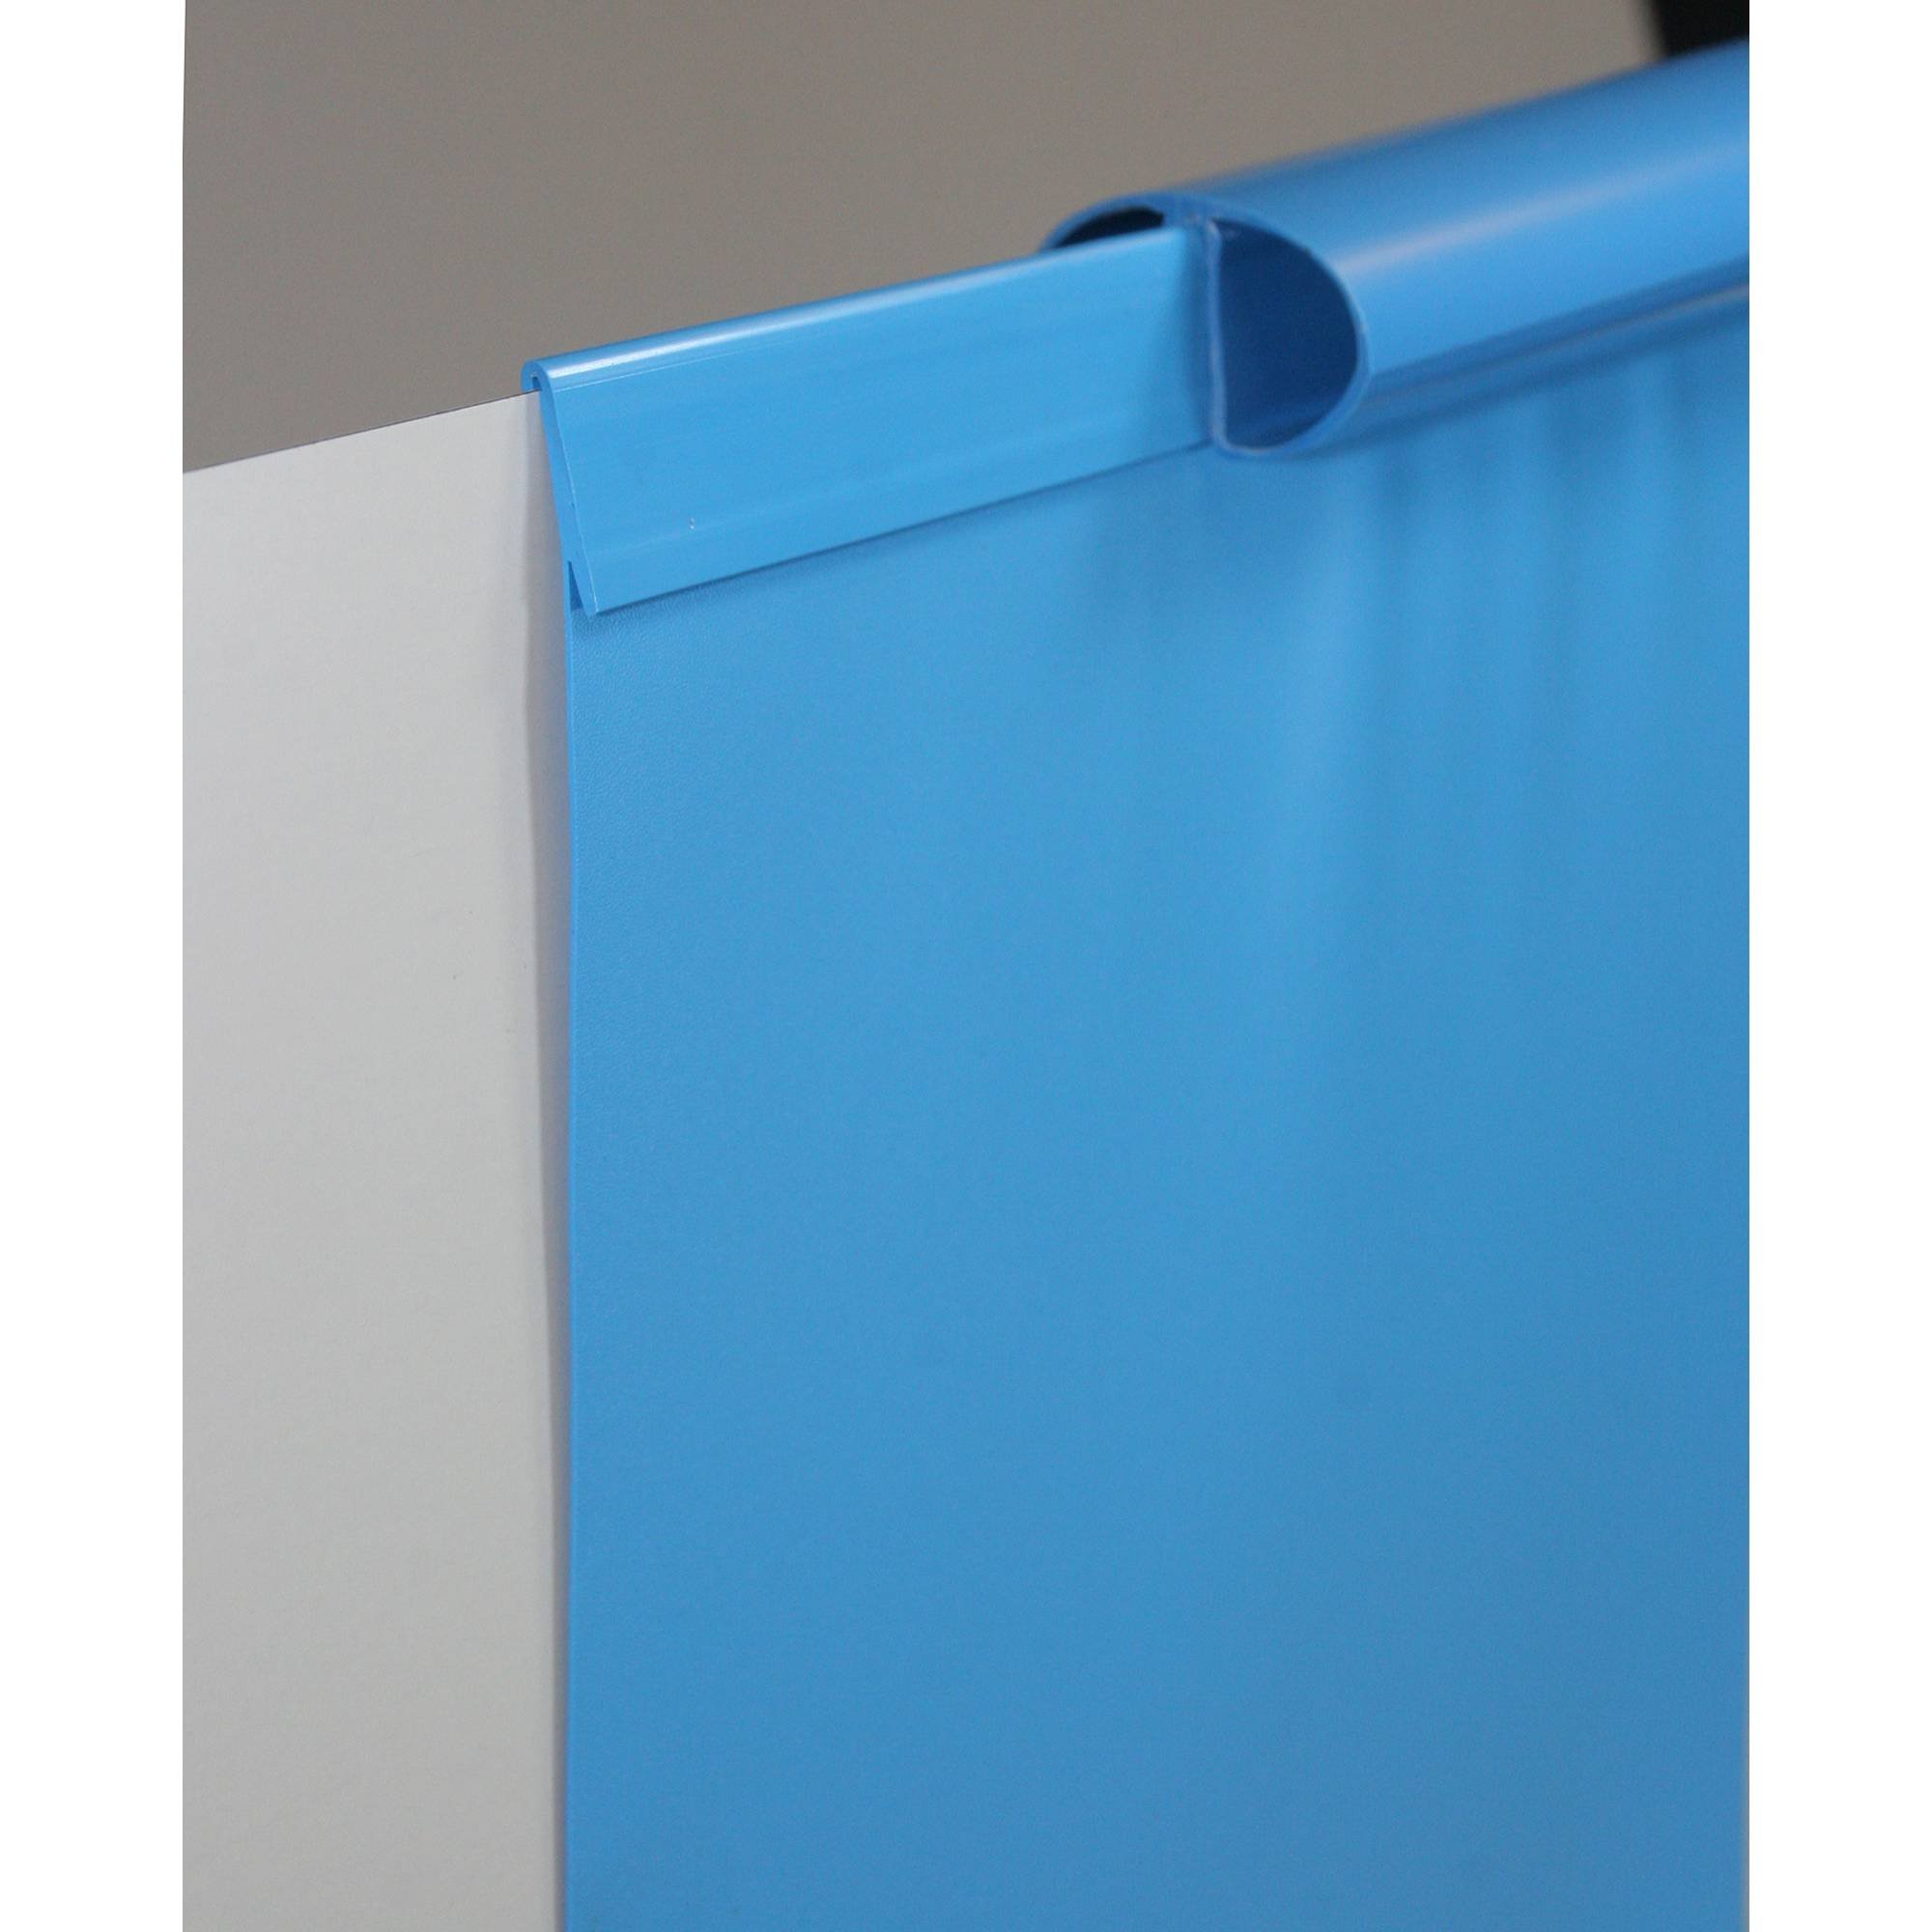 Poolfolie Ersatzfolie Ovalbecken 490x300x150cm - Dicke 0,6mm - Einhängebiese - blau